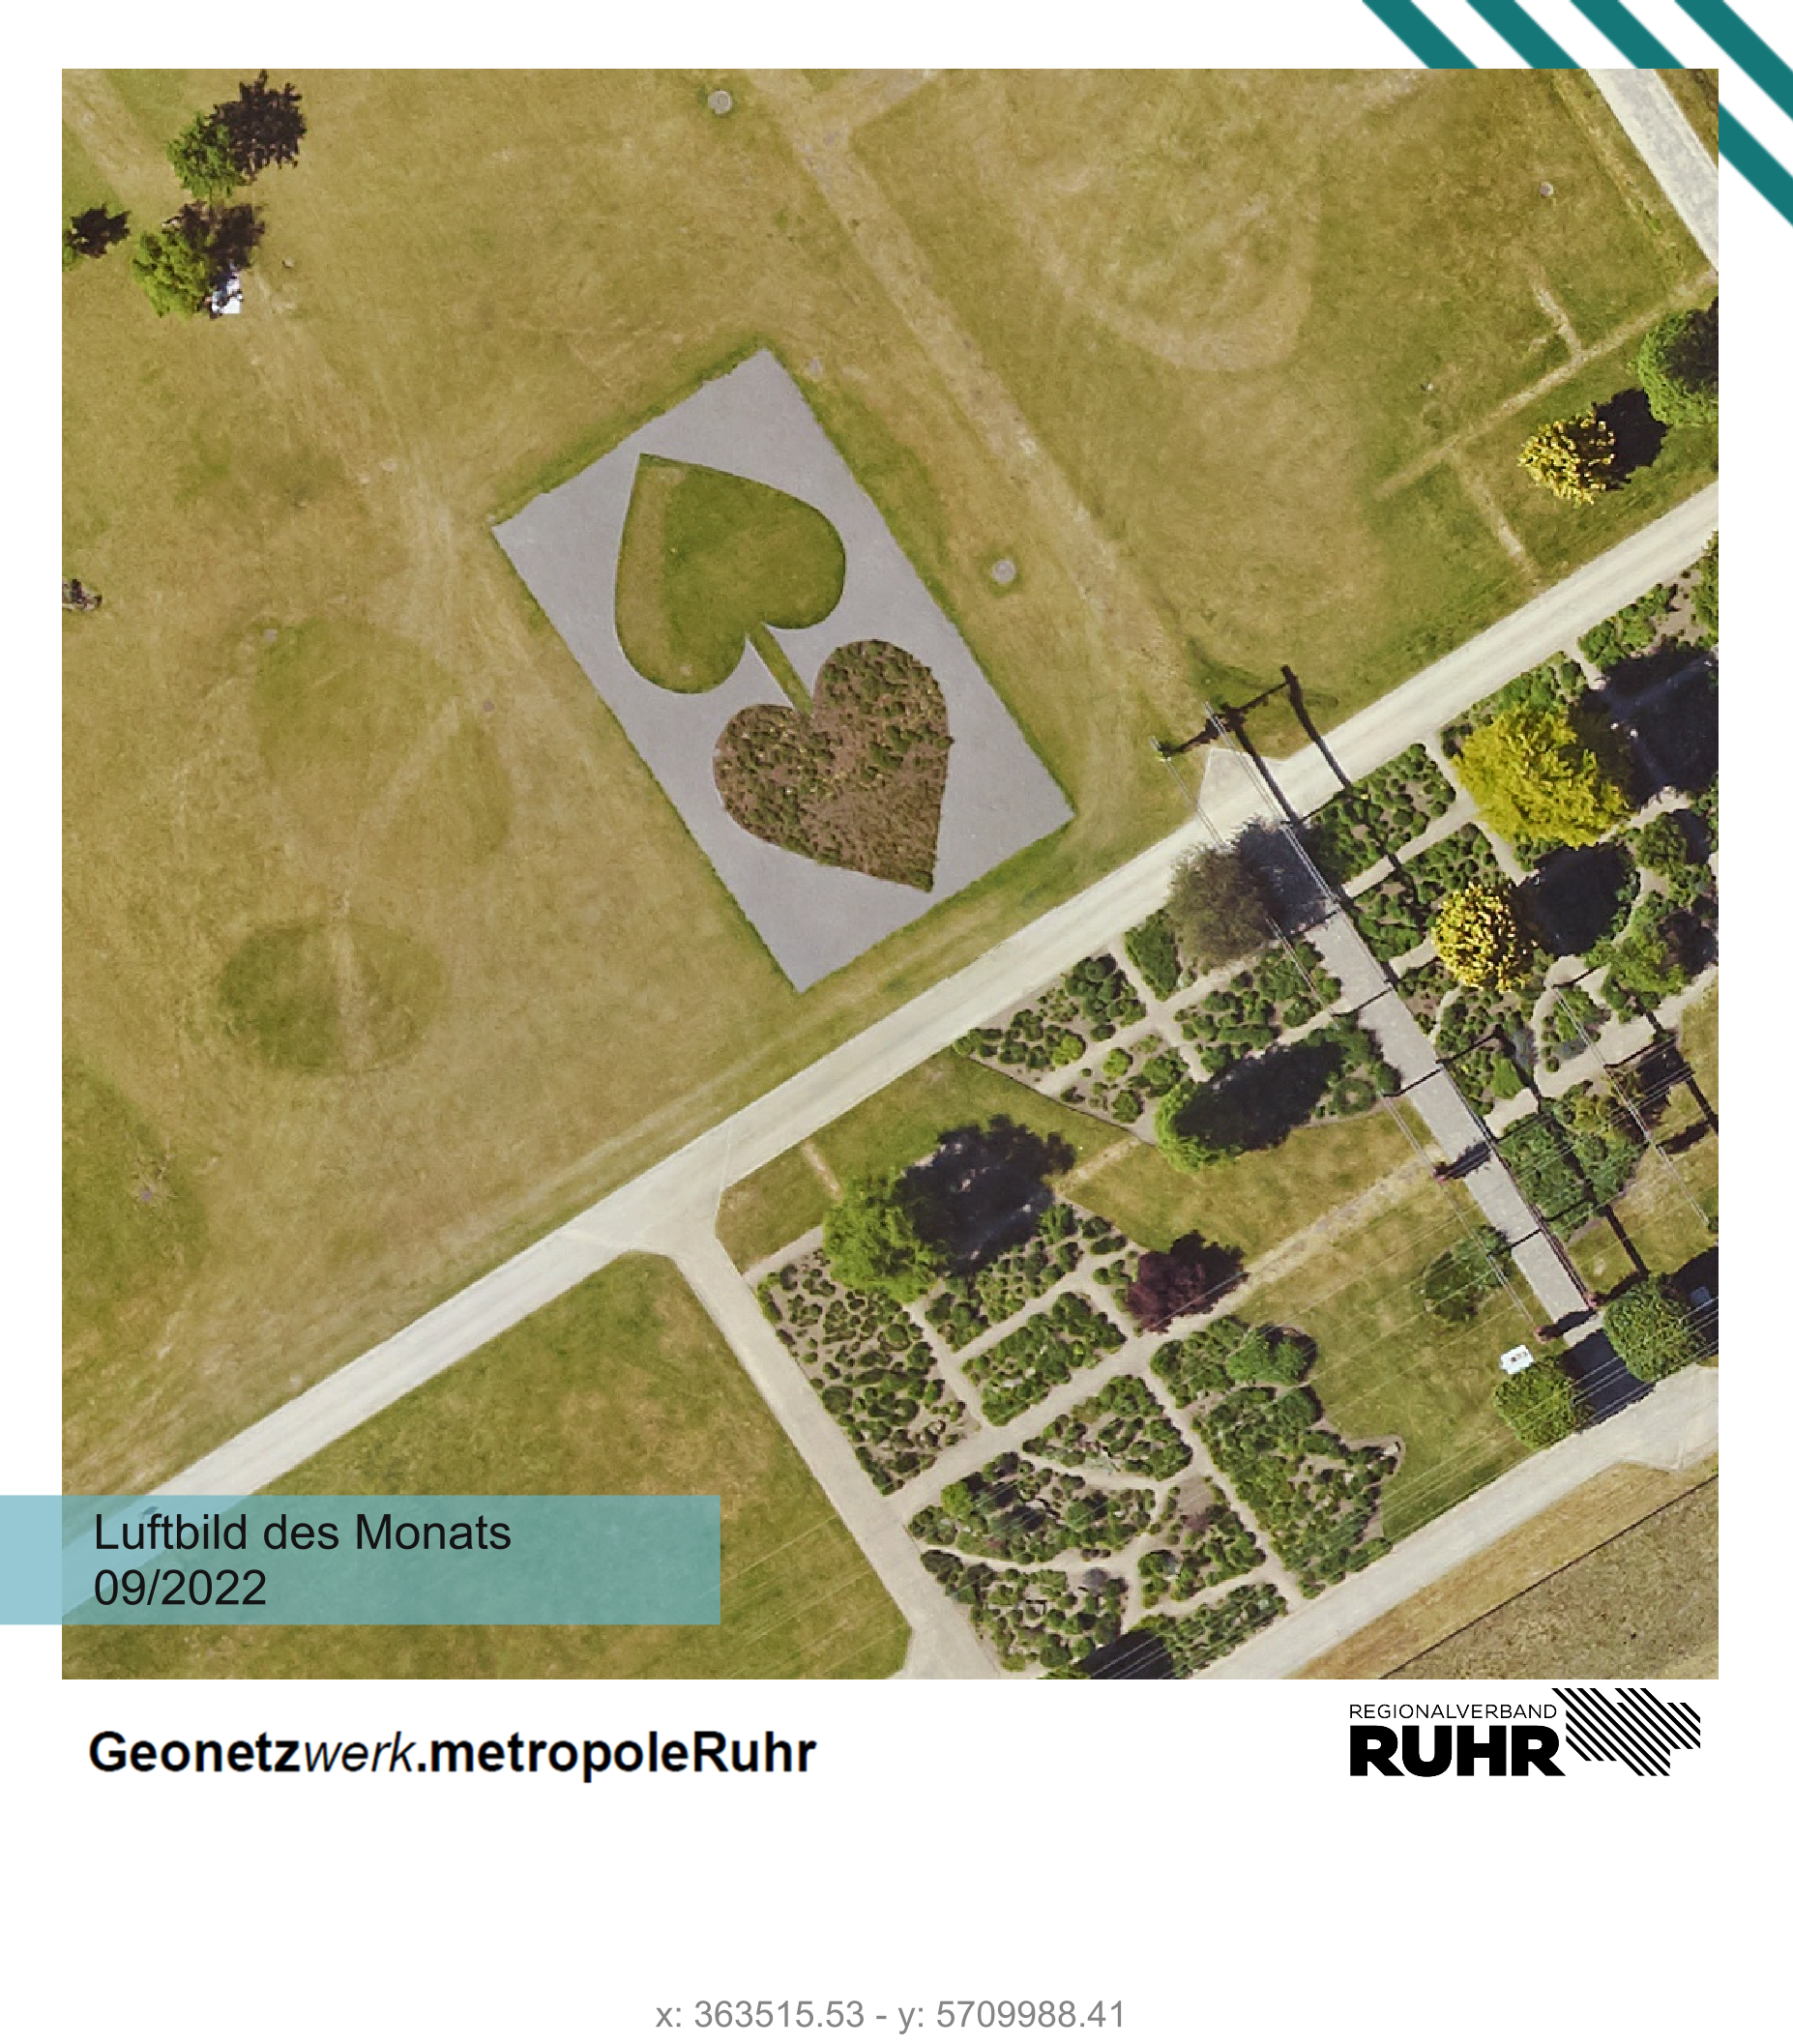 Luftbild des Monats September 2022 mit zwei Herzen im Nordsternpark Gelsenkirchen